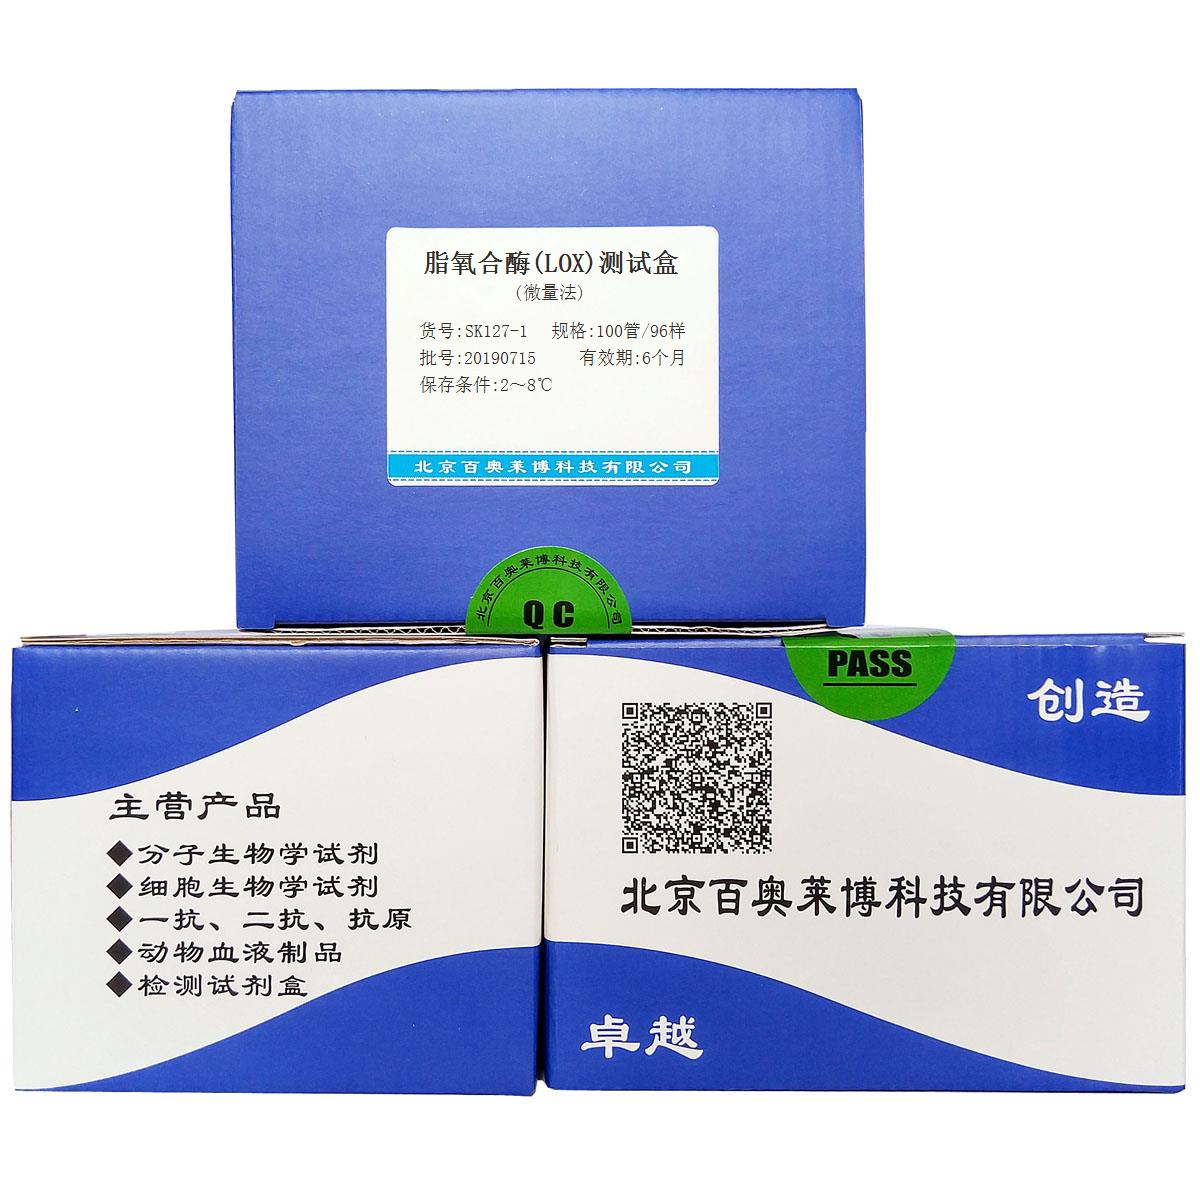 脂氧合酶(LOX)测试盒(微量法)现货供应